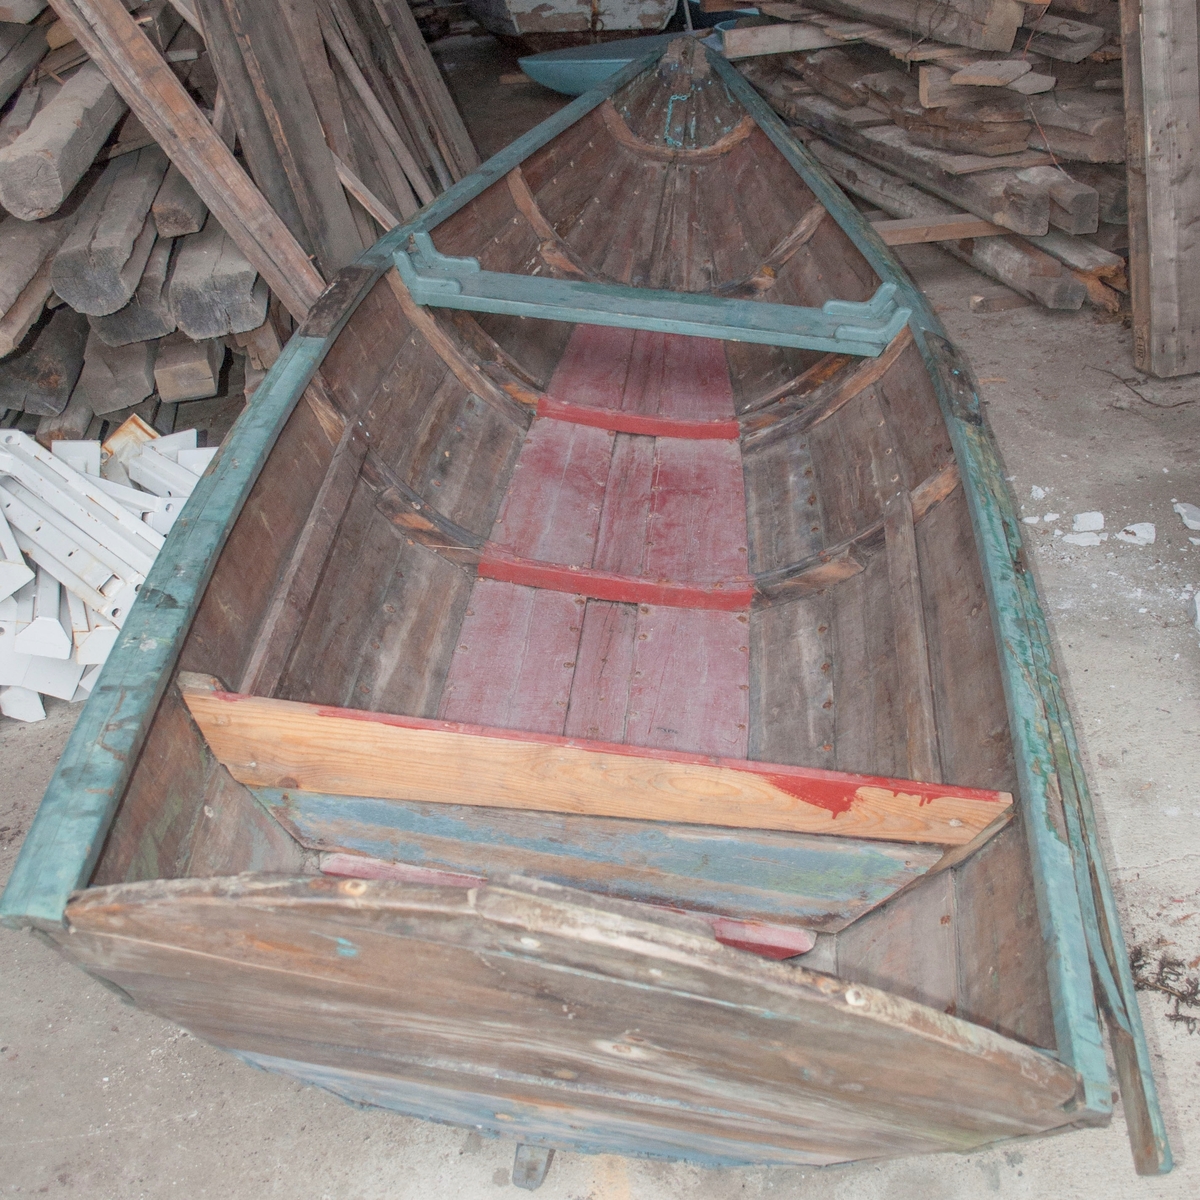 Holmsbupram i tre. Klinkbygd med spant - furu. Fire bordganger + bunnplanke.

Båten ble skadet i akterenden ved første spengning for bolig/museumsprosjektet i Vollen.